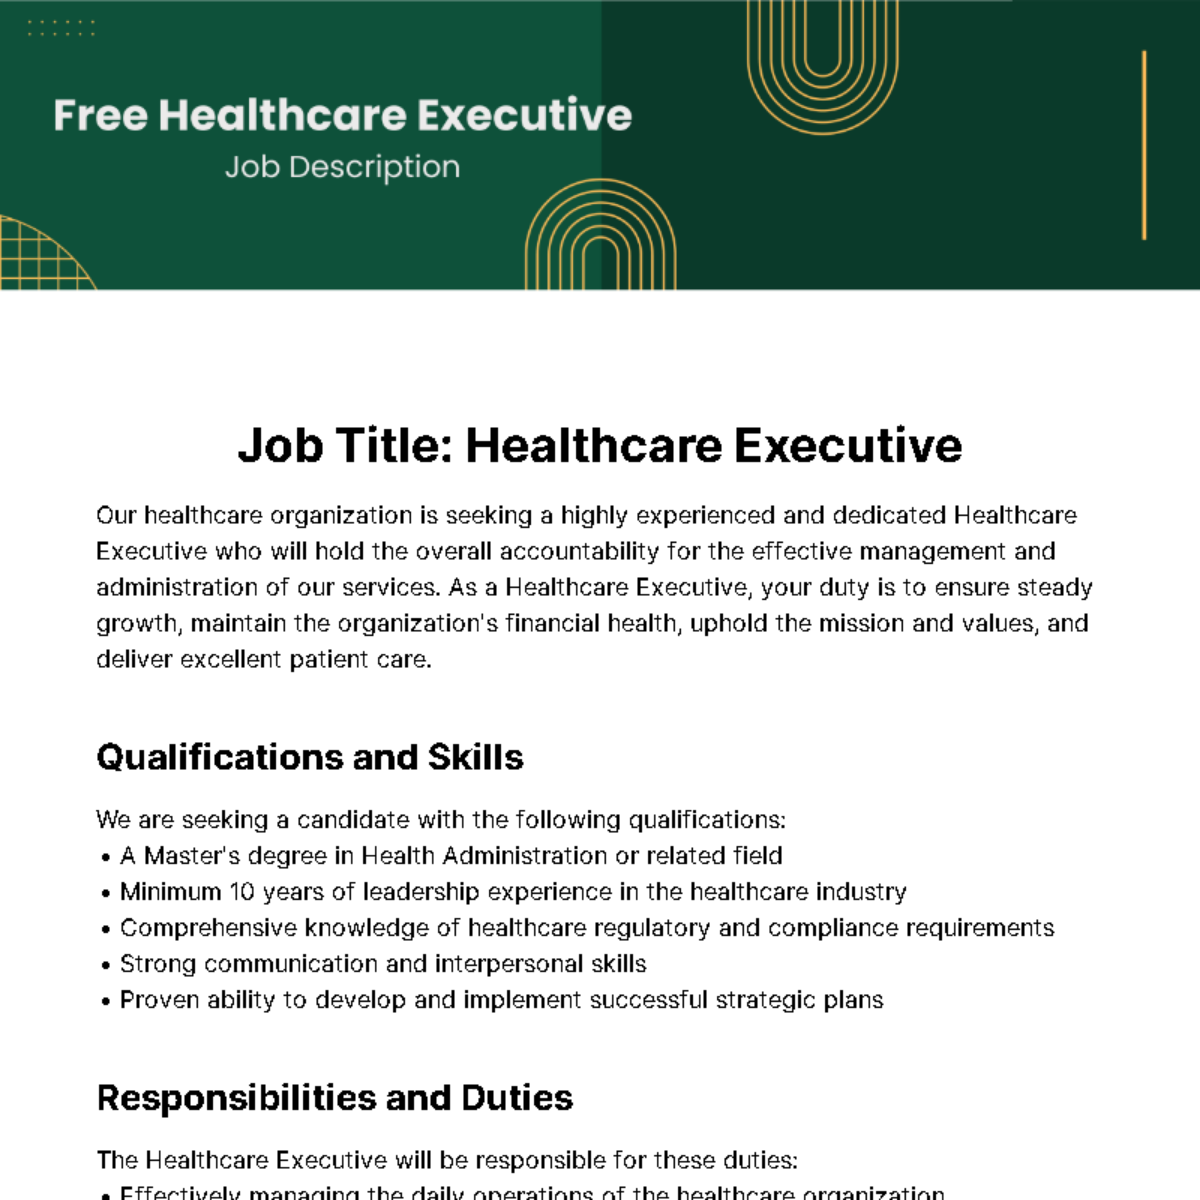 Free Healthcare Executive Job Description Template